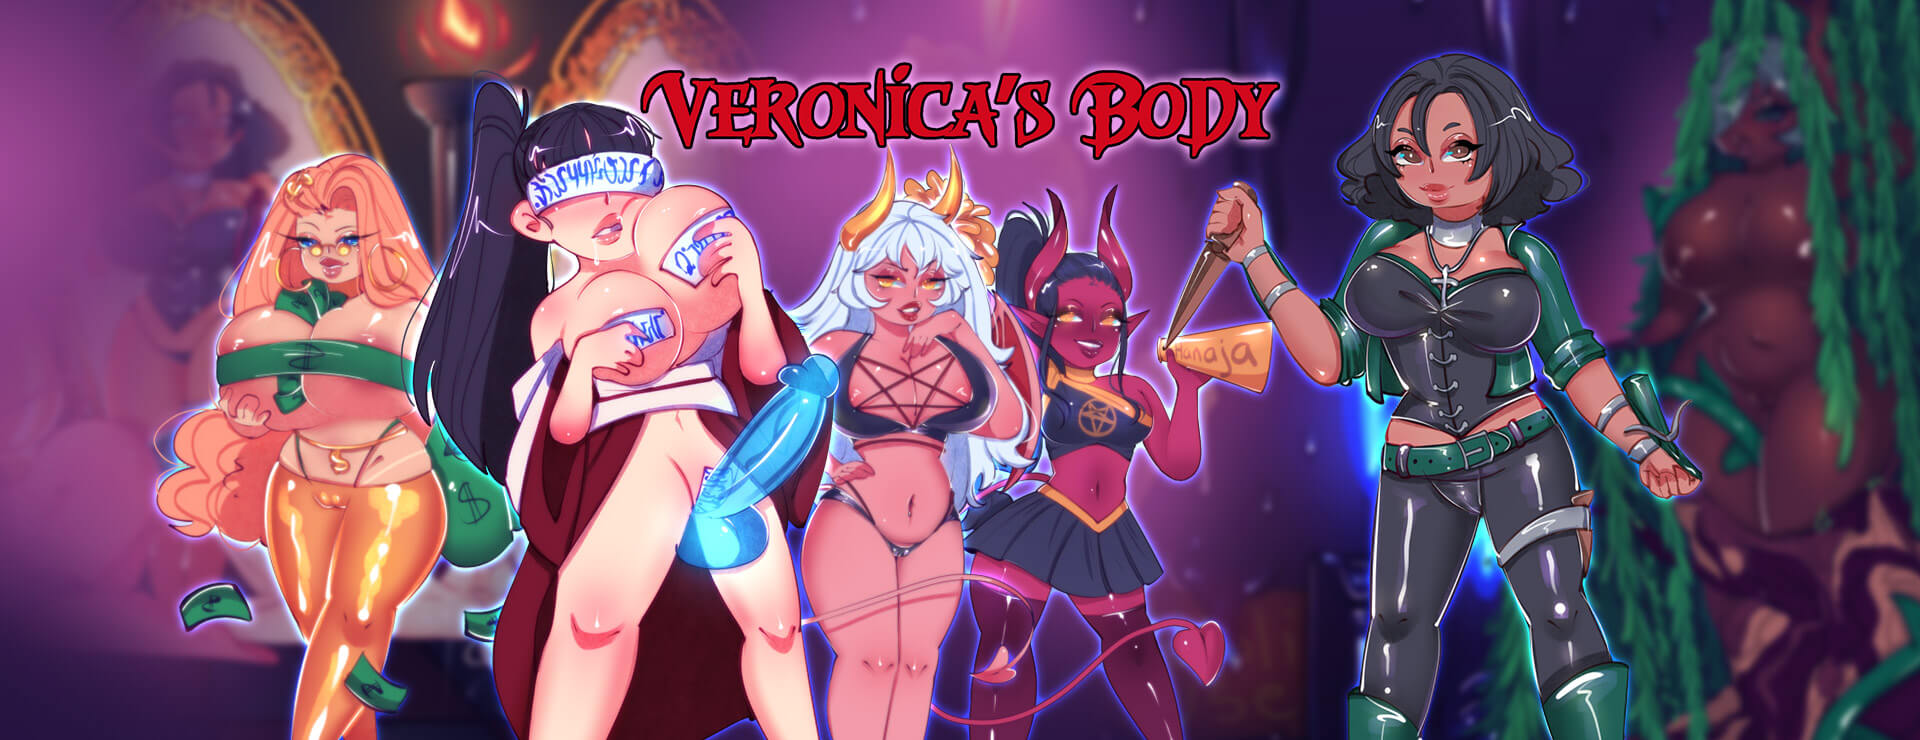 Veronica's Body - RPG ゲーム